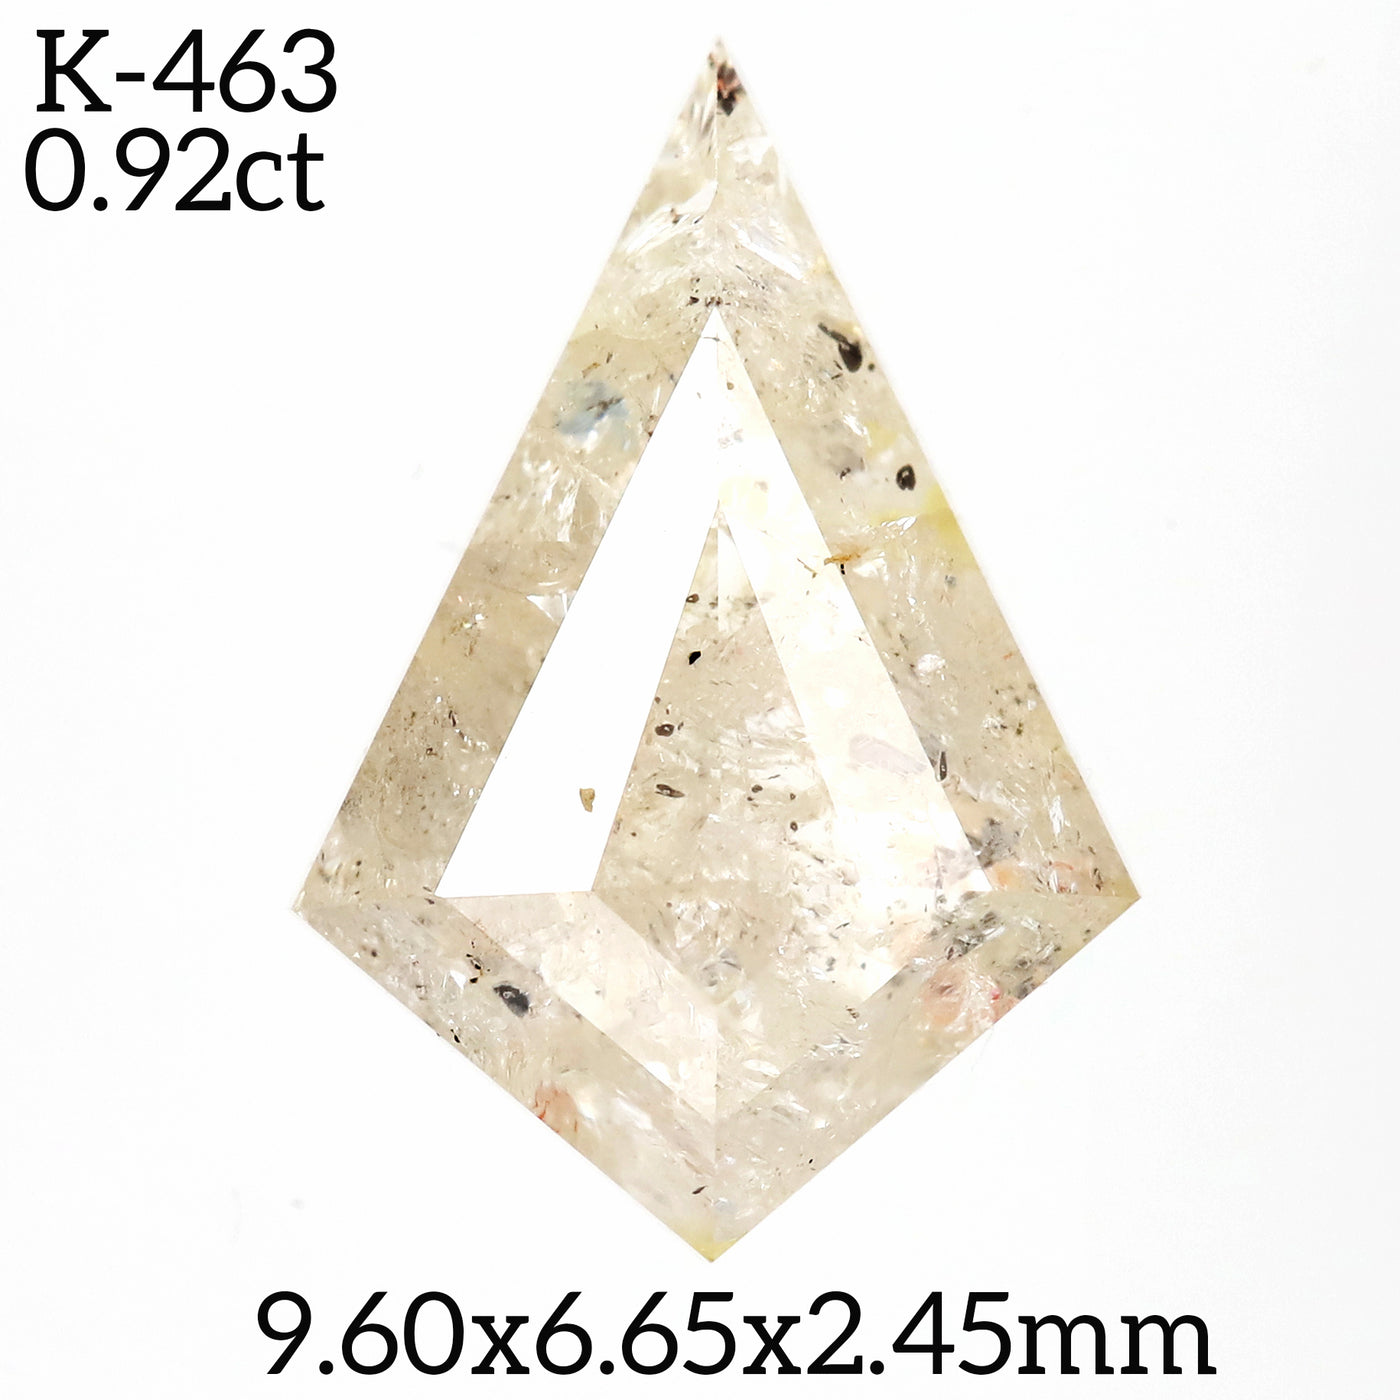 K463 - Salt and pepper kite diamond